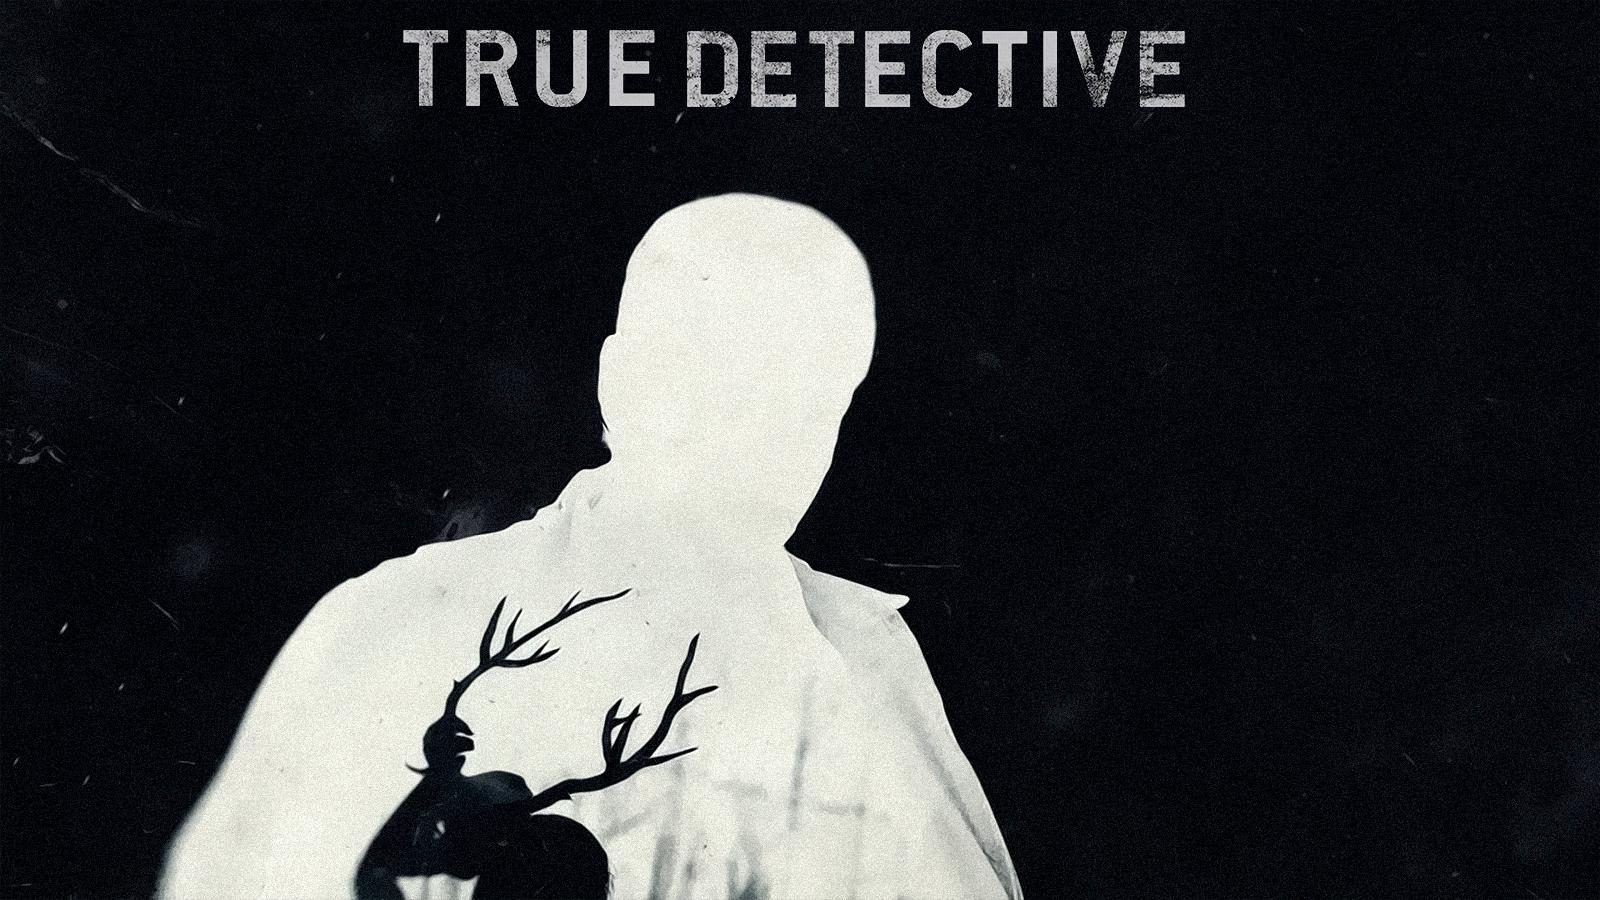 True Detective Wallpaper 21 X 900